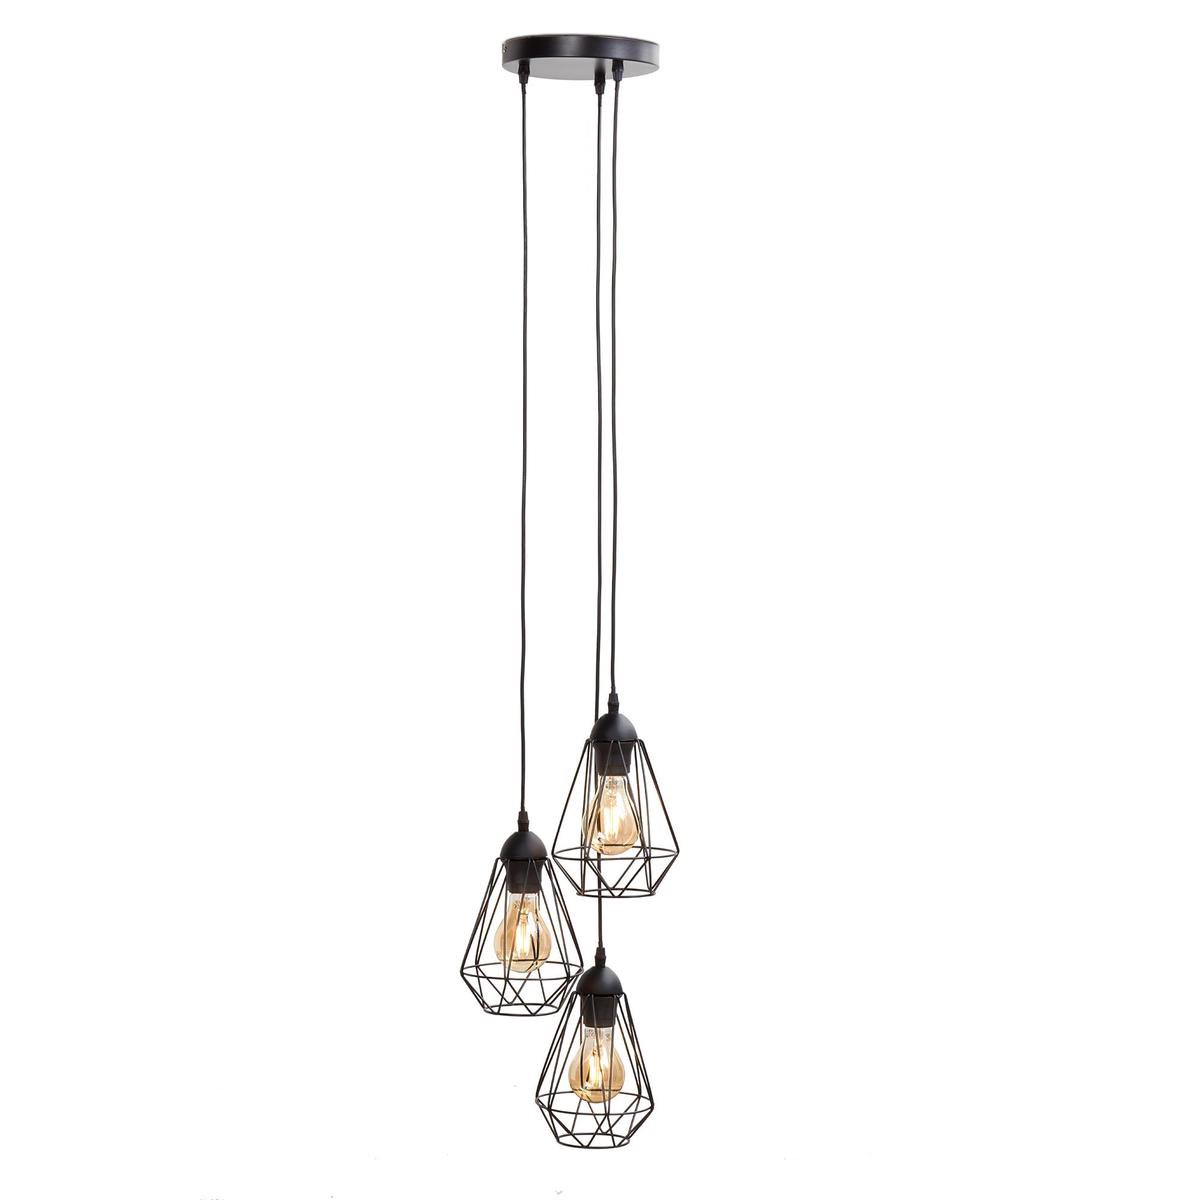 B.K.Licht - Metalen Hanglampen - zwart - voor binnen - industriële - met 3 lichtpunten - eetkamer - pendellamp - Ø29cm - l:135cm - E27 fitting - excl. lichtbronnen